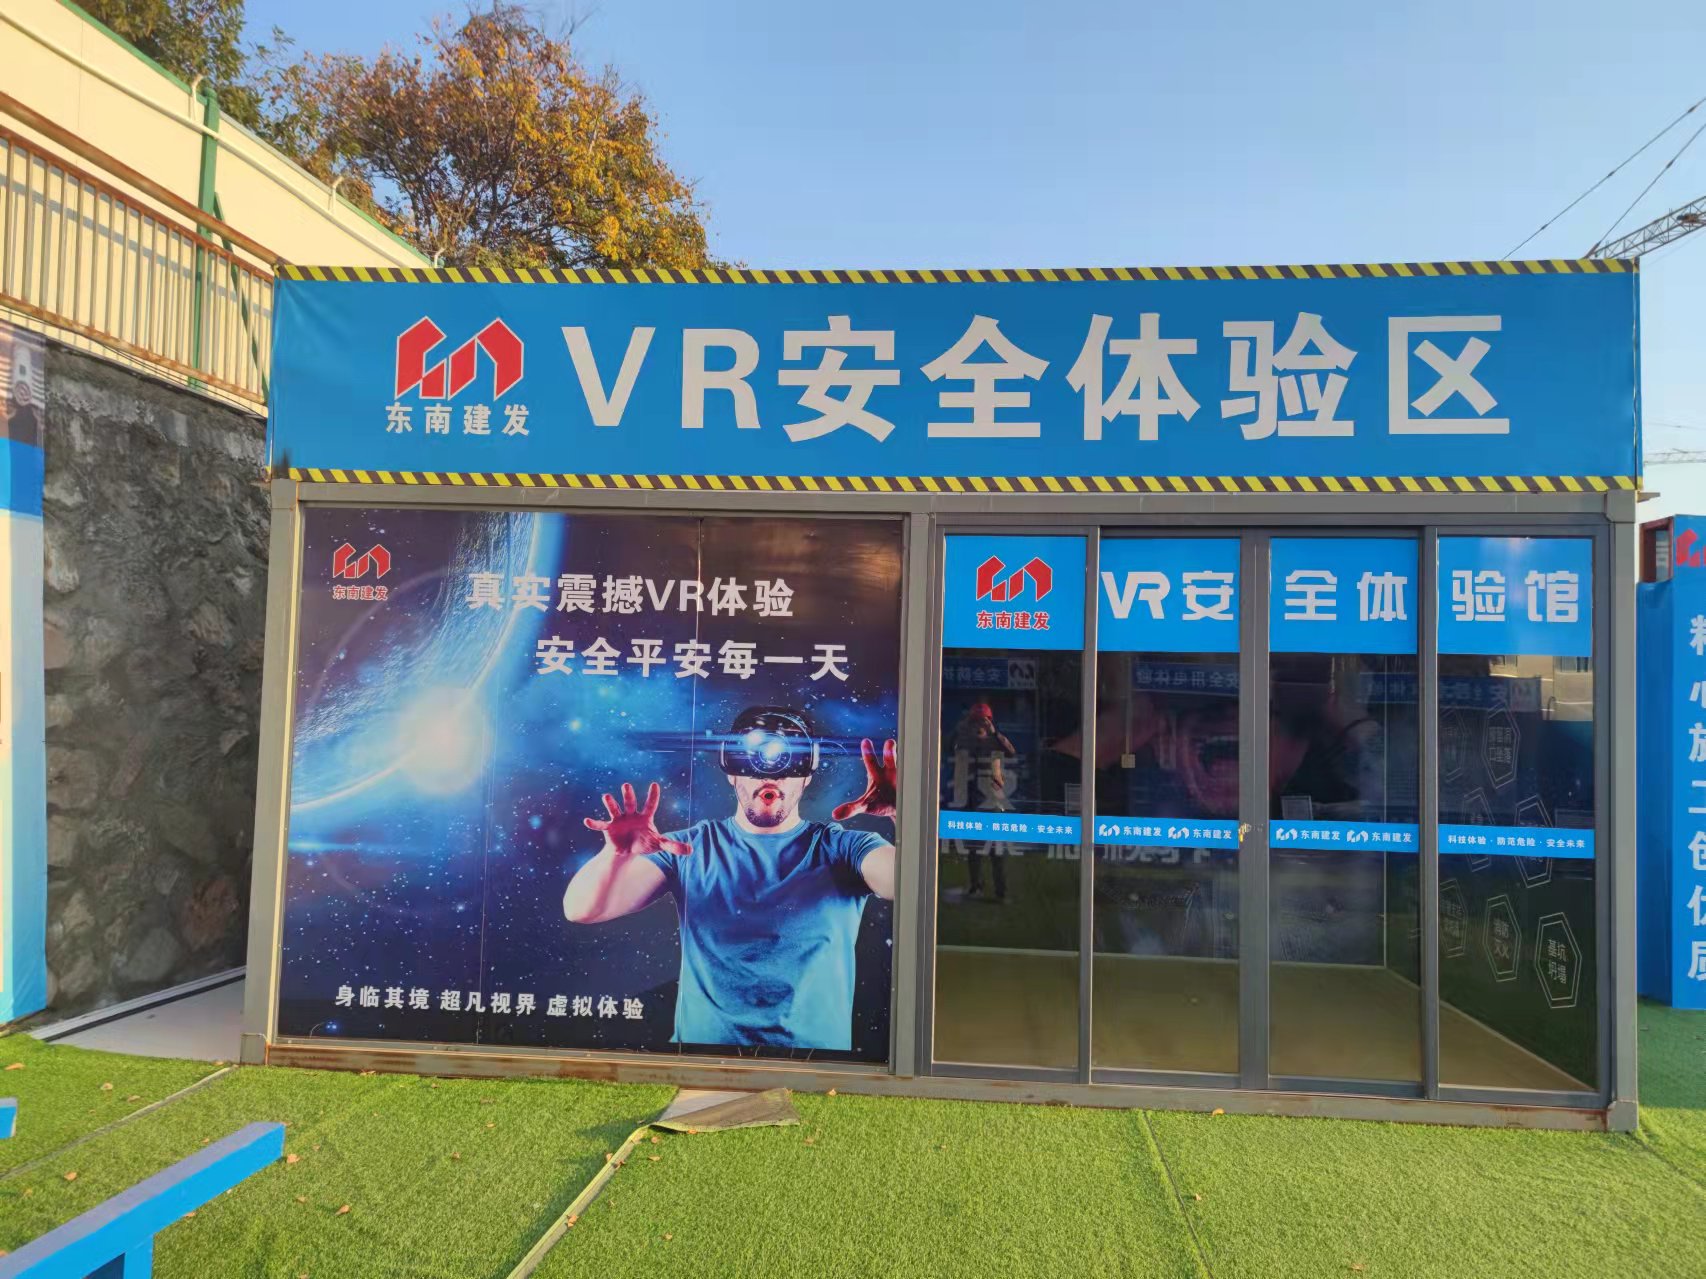 VR安全體驗區